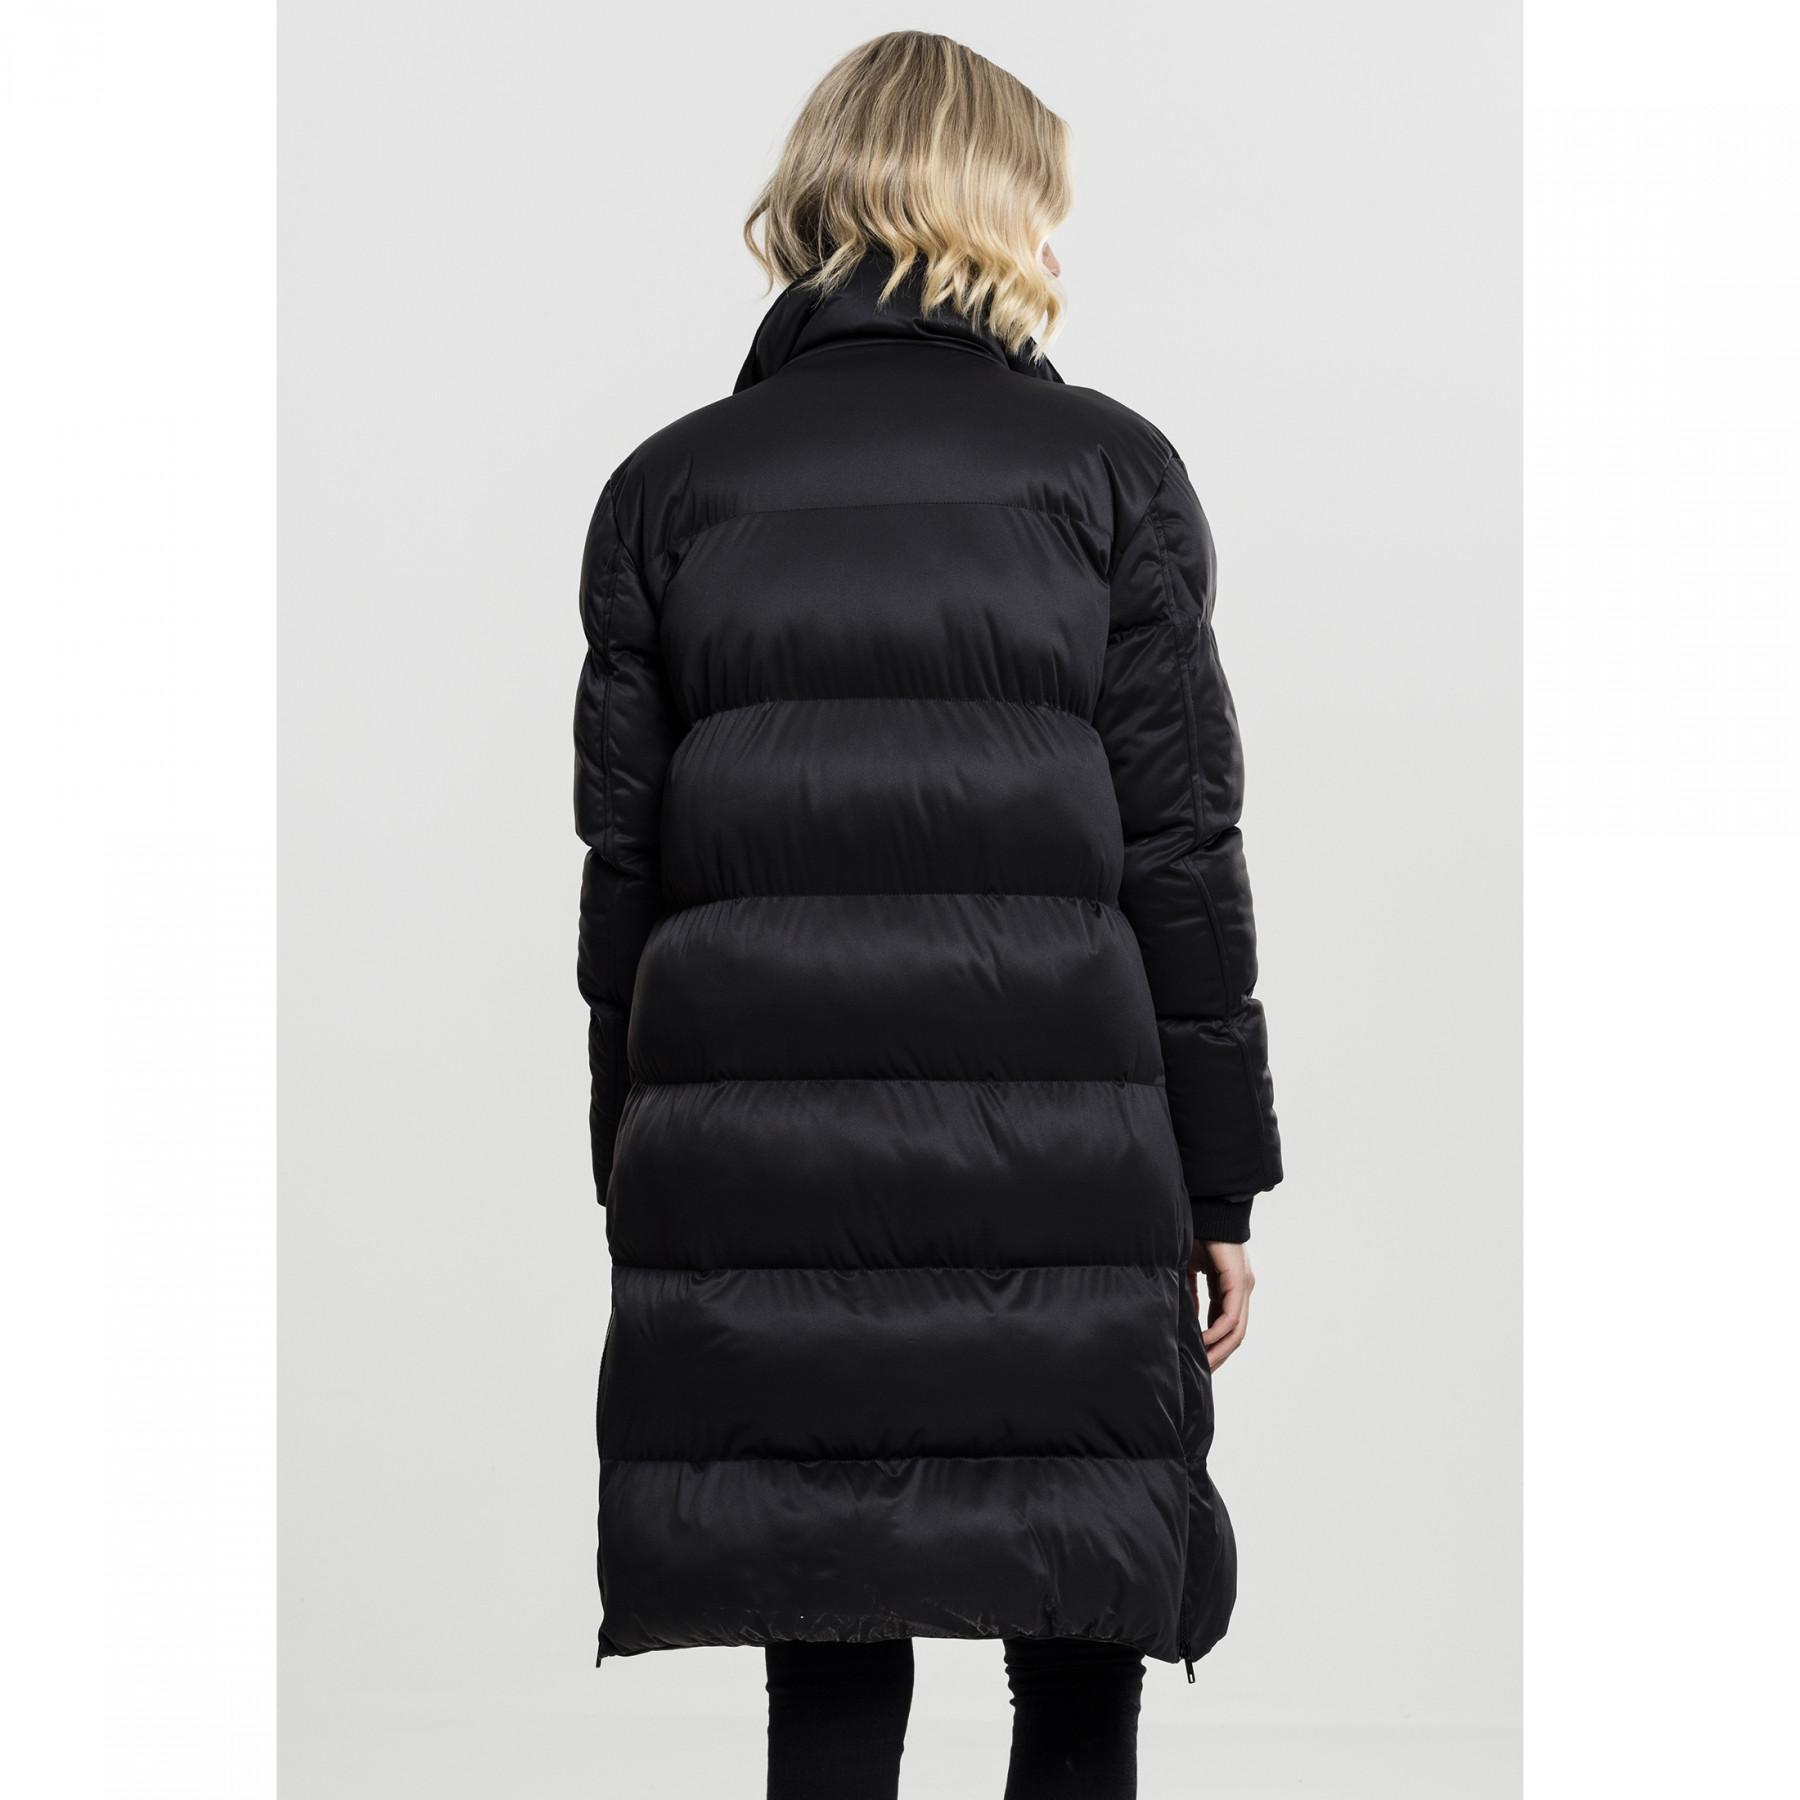 Women's Urban Classic oversized coat